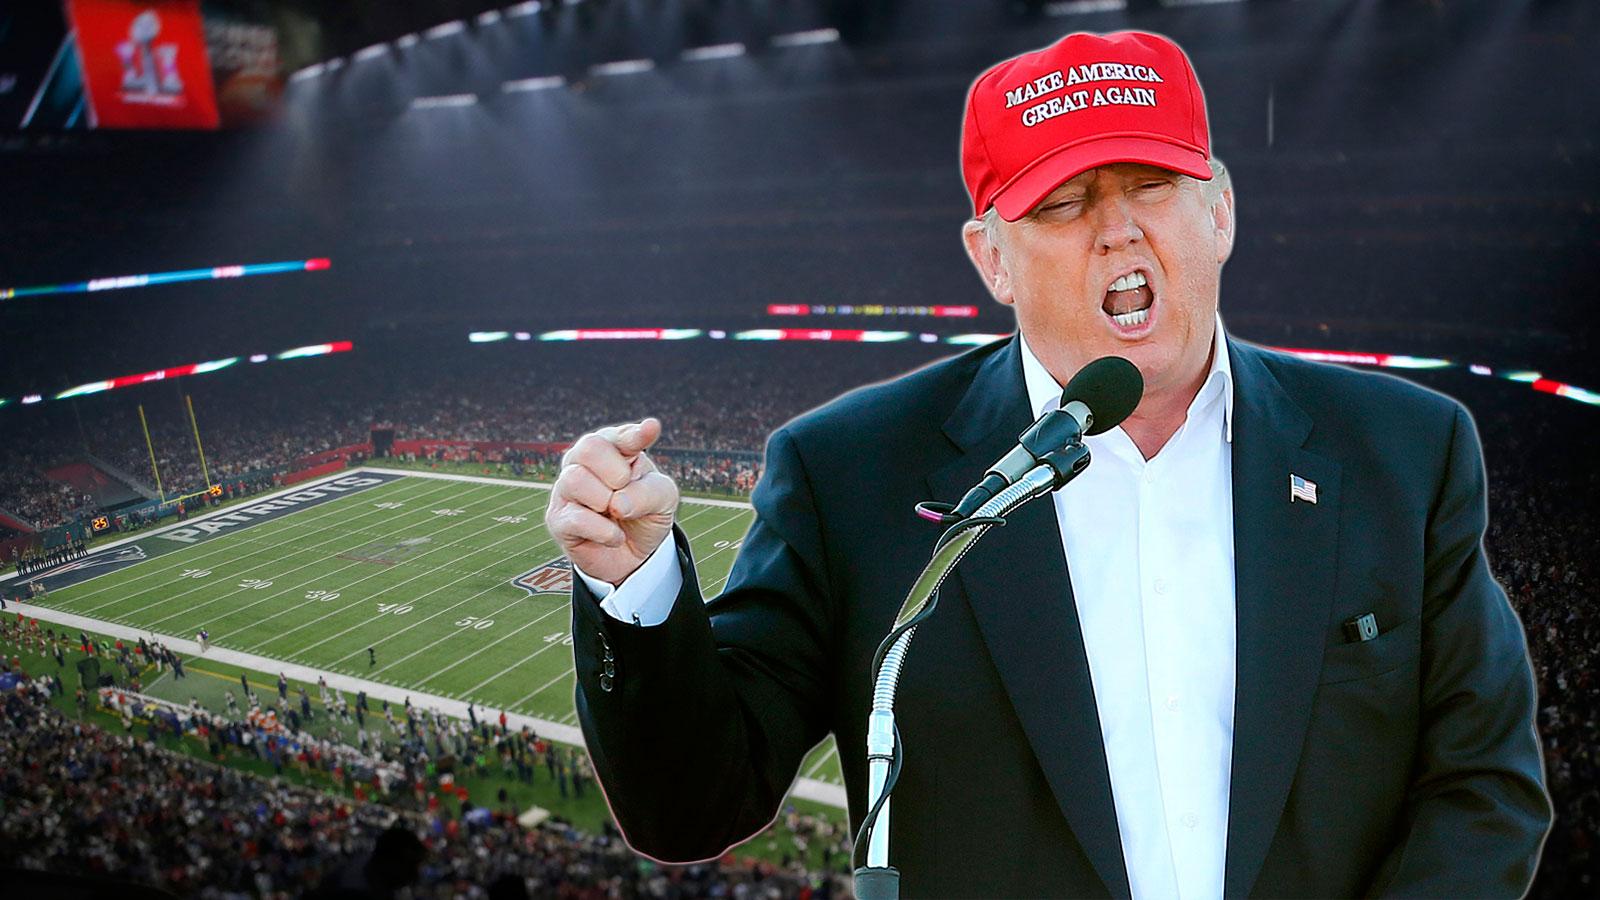 Många hoppades att Super Bowl skulle ena USA. Men så blev det inte den här gången, skriver Per Bjurman. Obs! Bilden är ett montage.